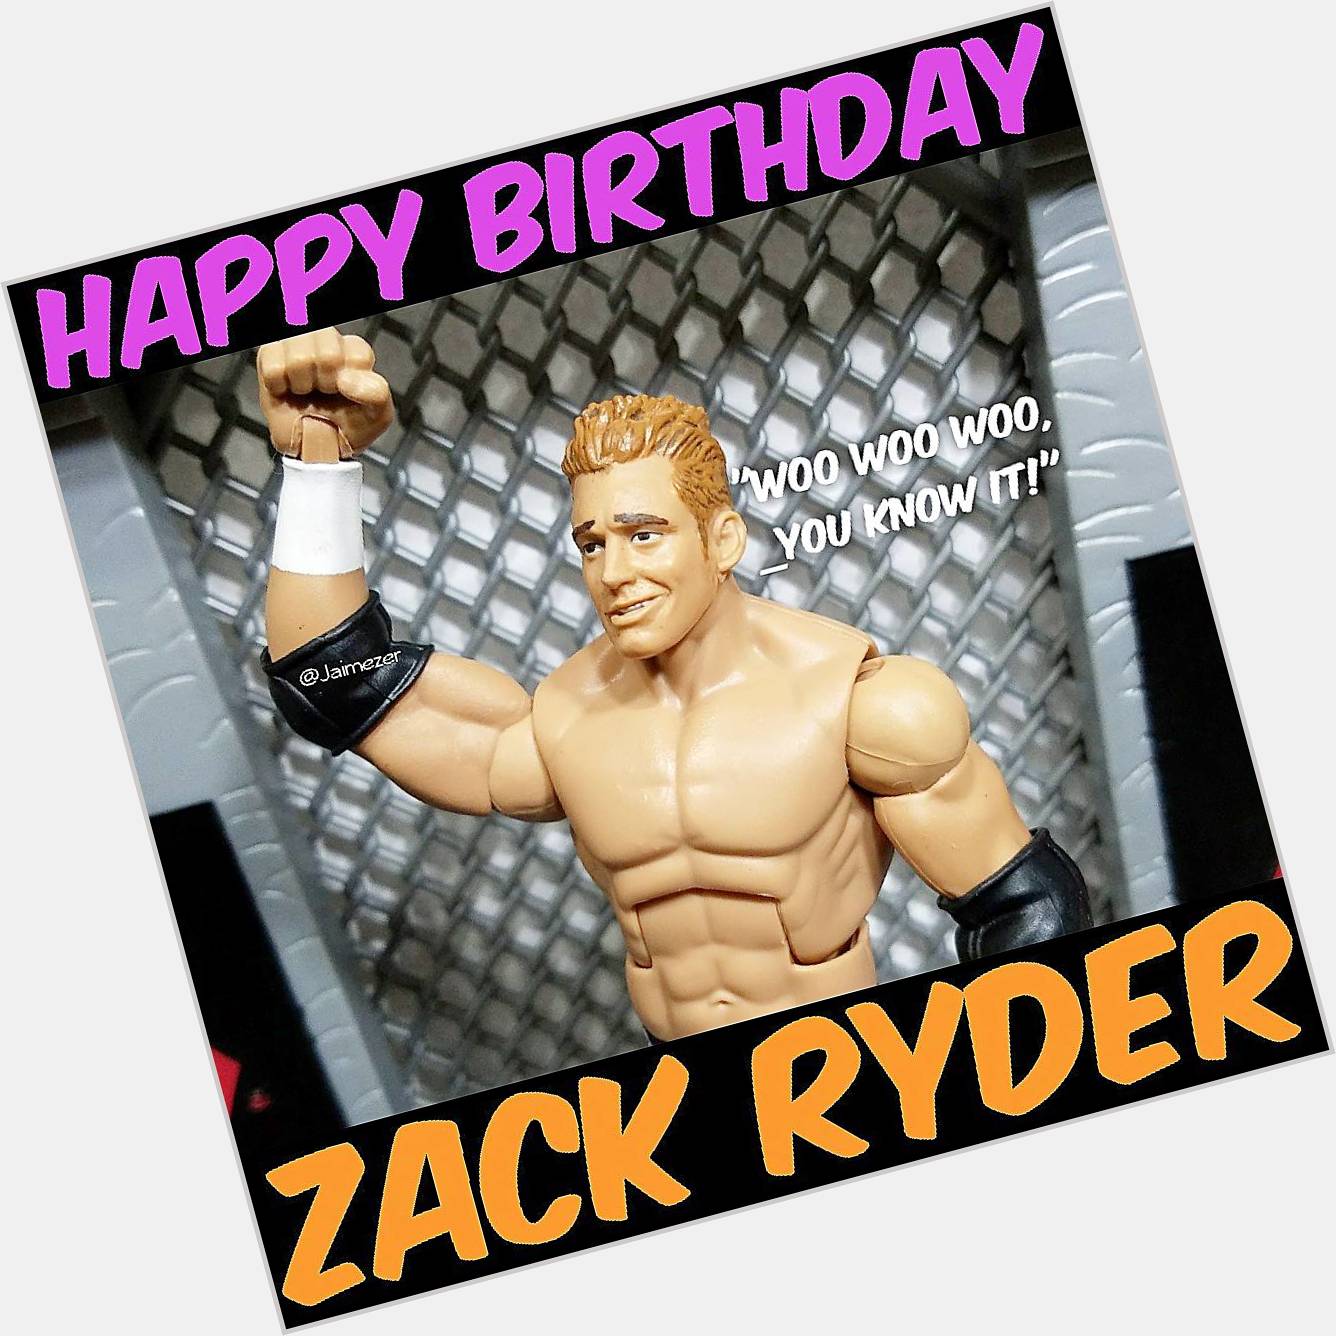 Happy Birthday to Zack Ryder!   